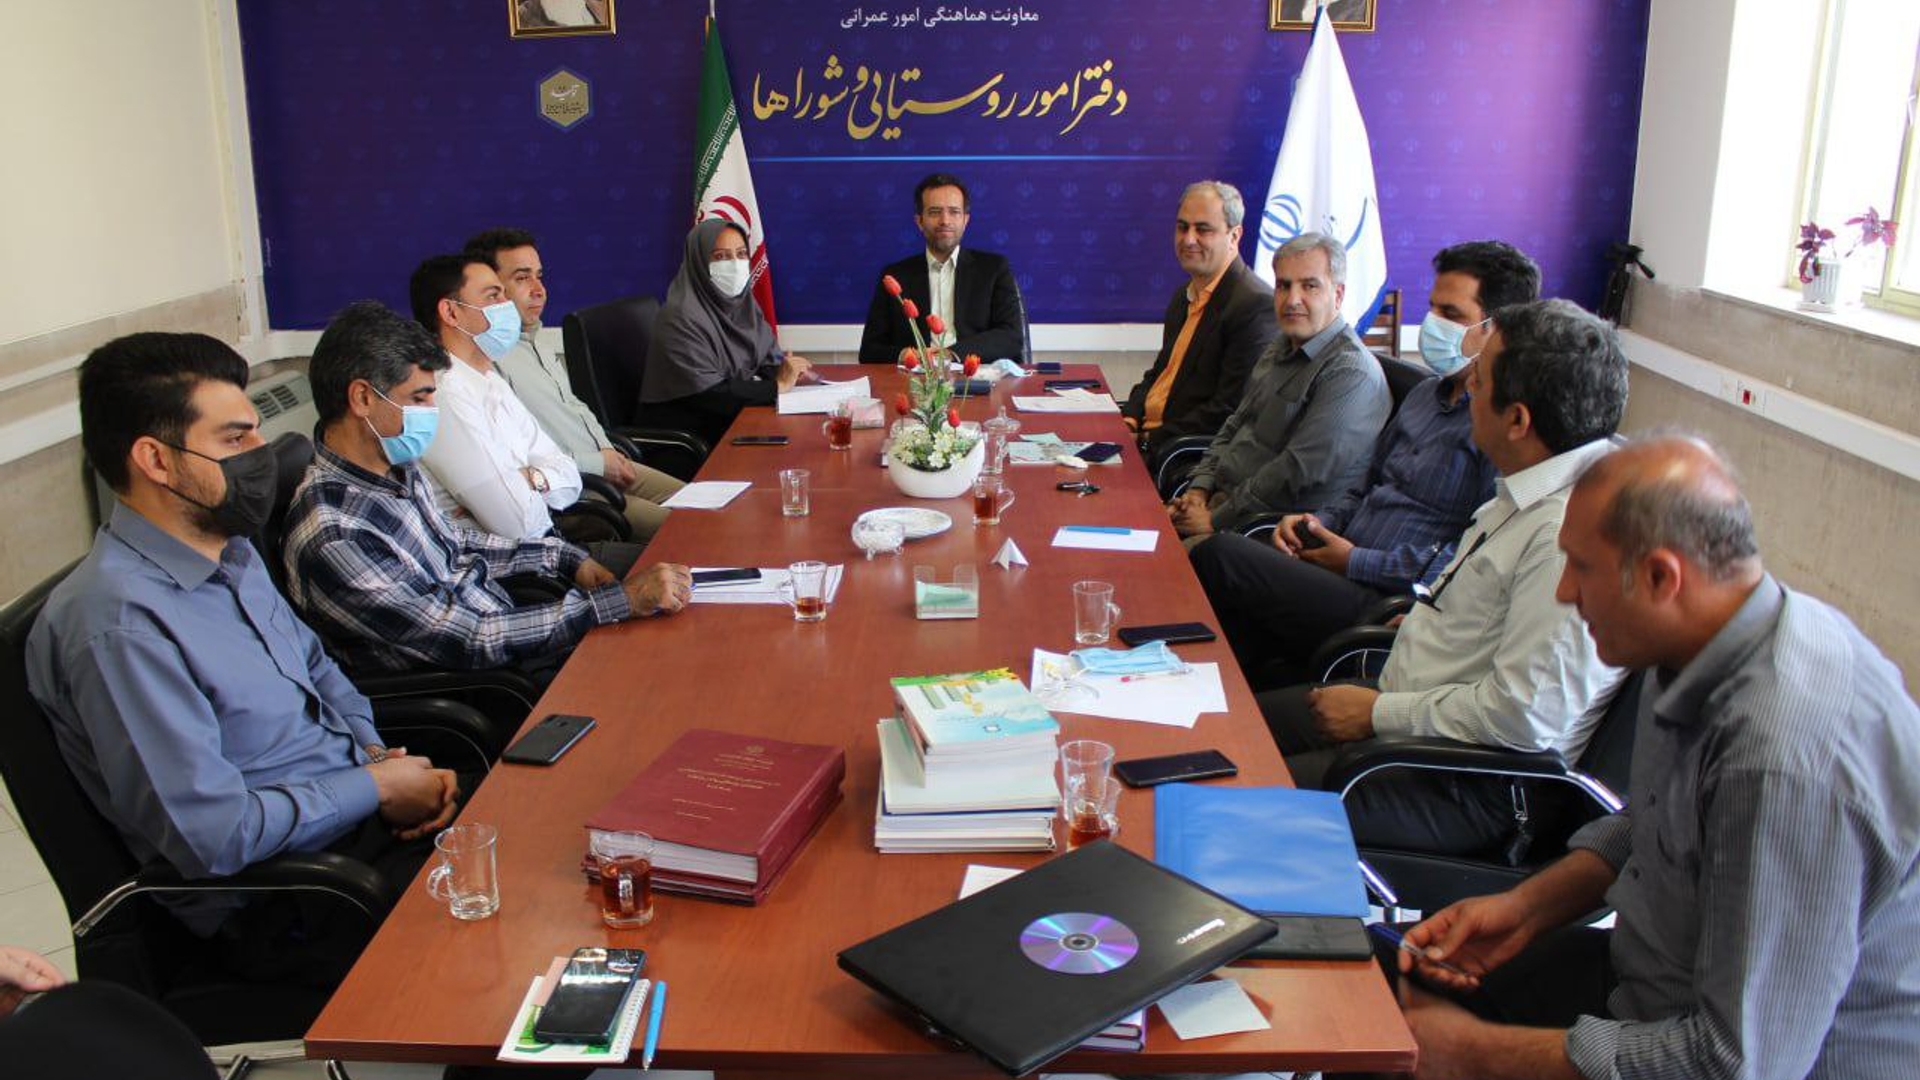 جلسه بررسی برنامه های دفتر امور روستایی و شوراها برگزار گردید.